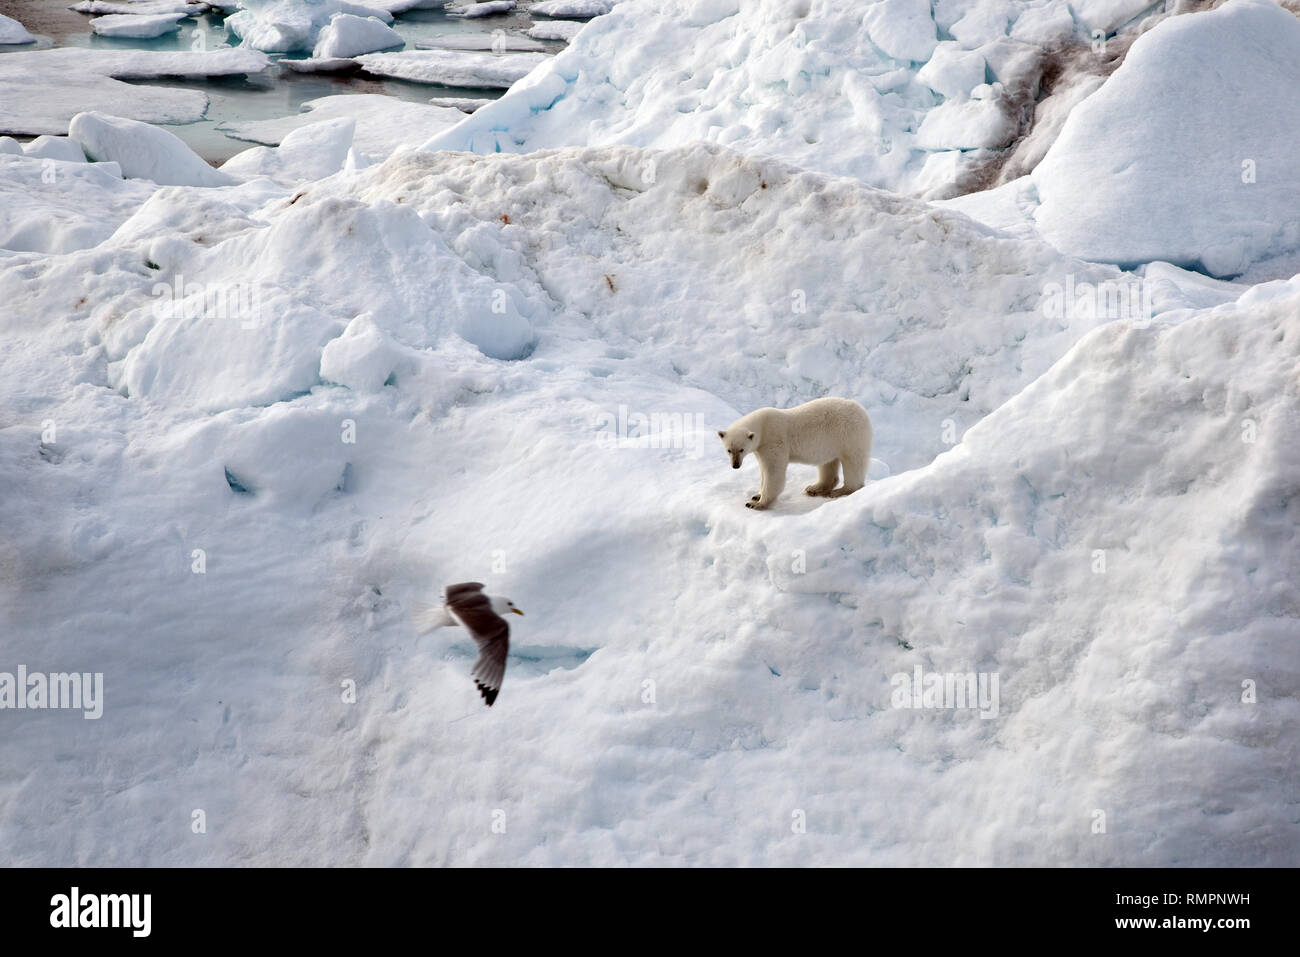 Archiviato - 14 agosto 2015, ---, -: un orso polare si erge su un iceberg nell'Oceano Artico. Foto: Ulf Mauder/dpa Foto Stock